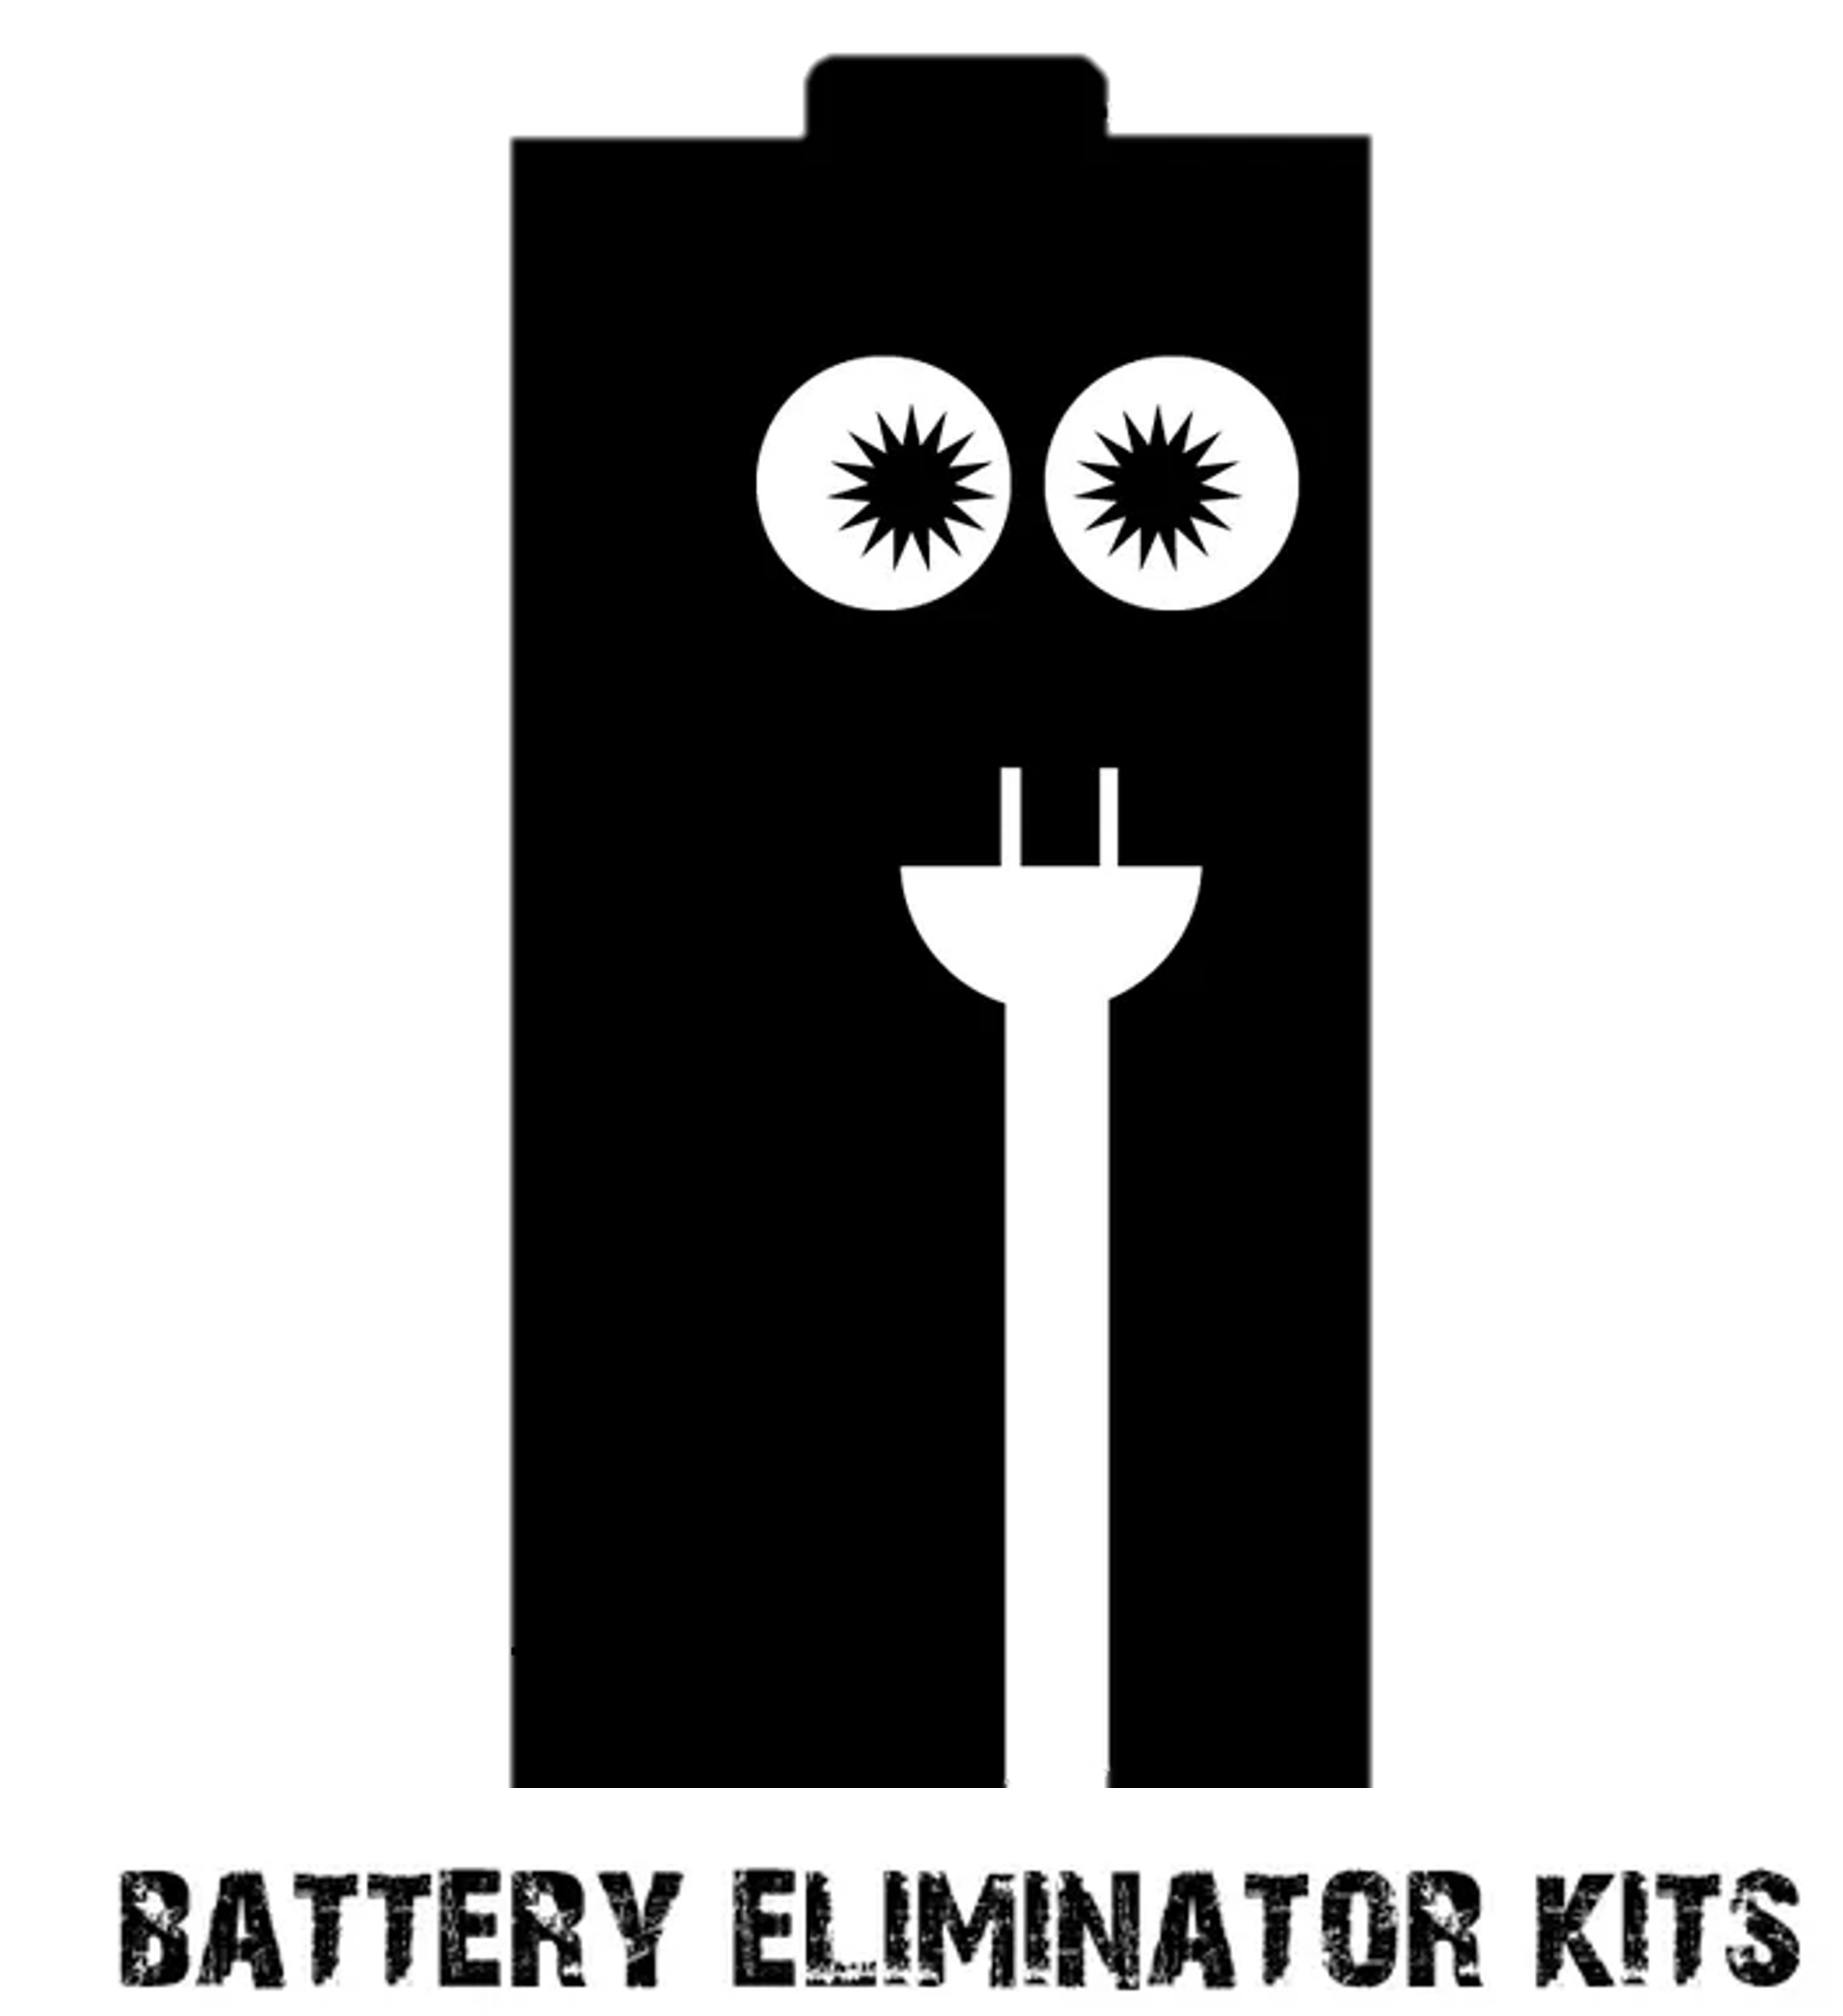 BatteryEliminatorKits.com Homepage